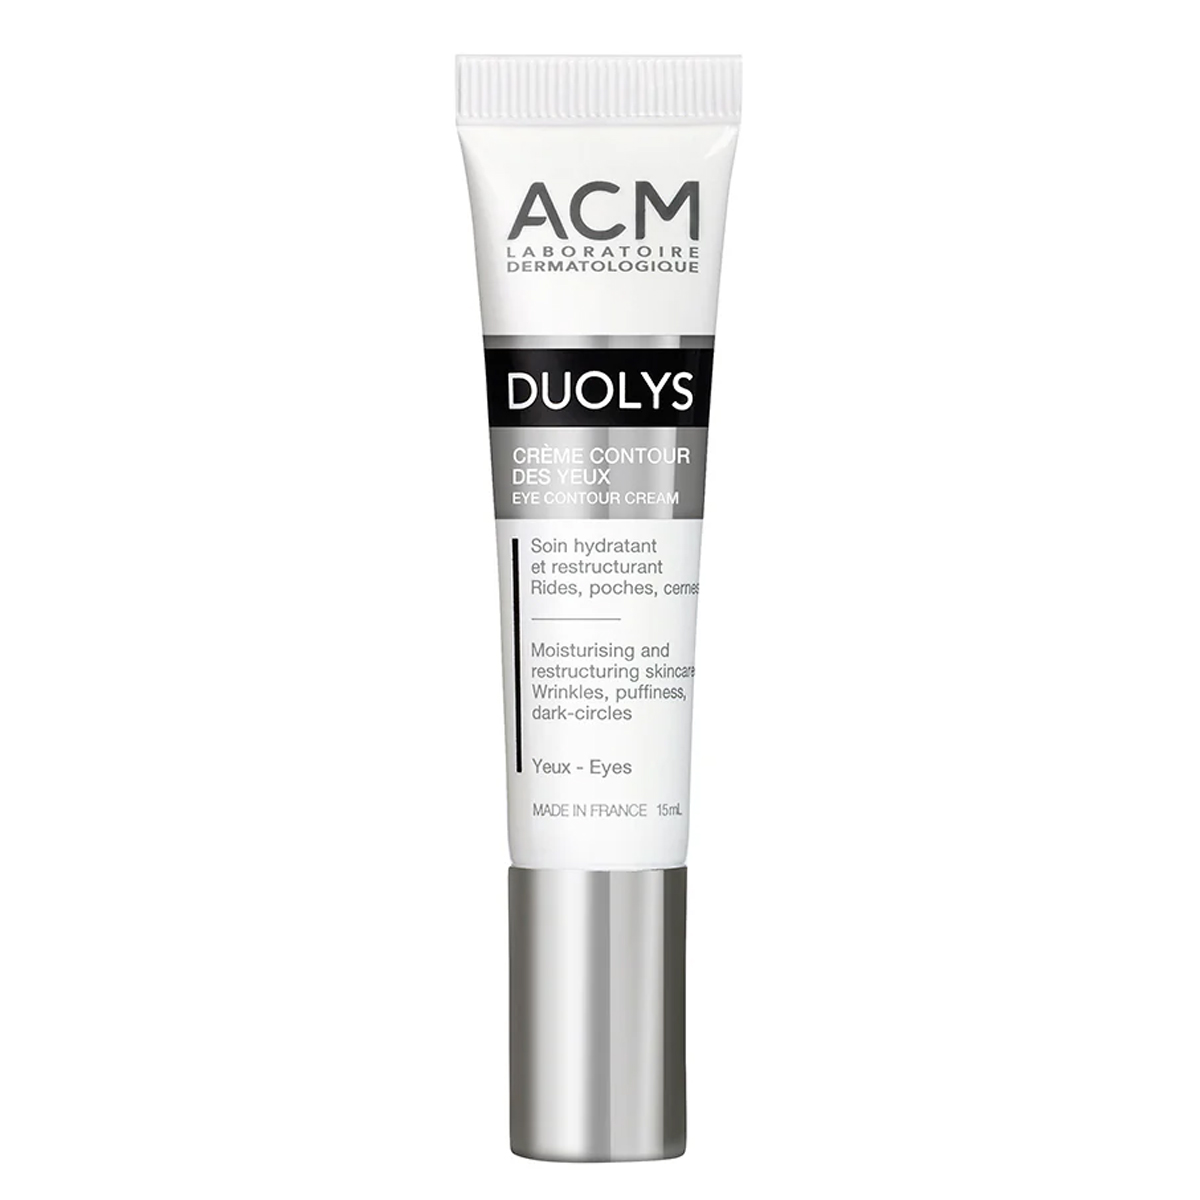 کرم دور چشم دولیس~Duolys Eye Contour Cream~ACM